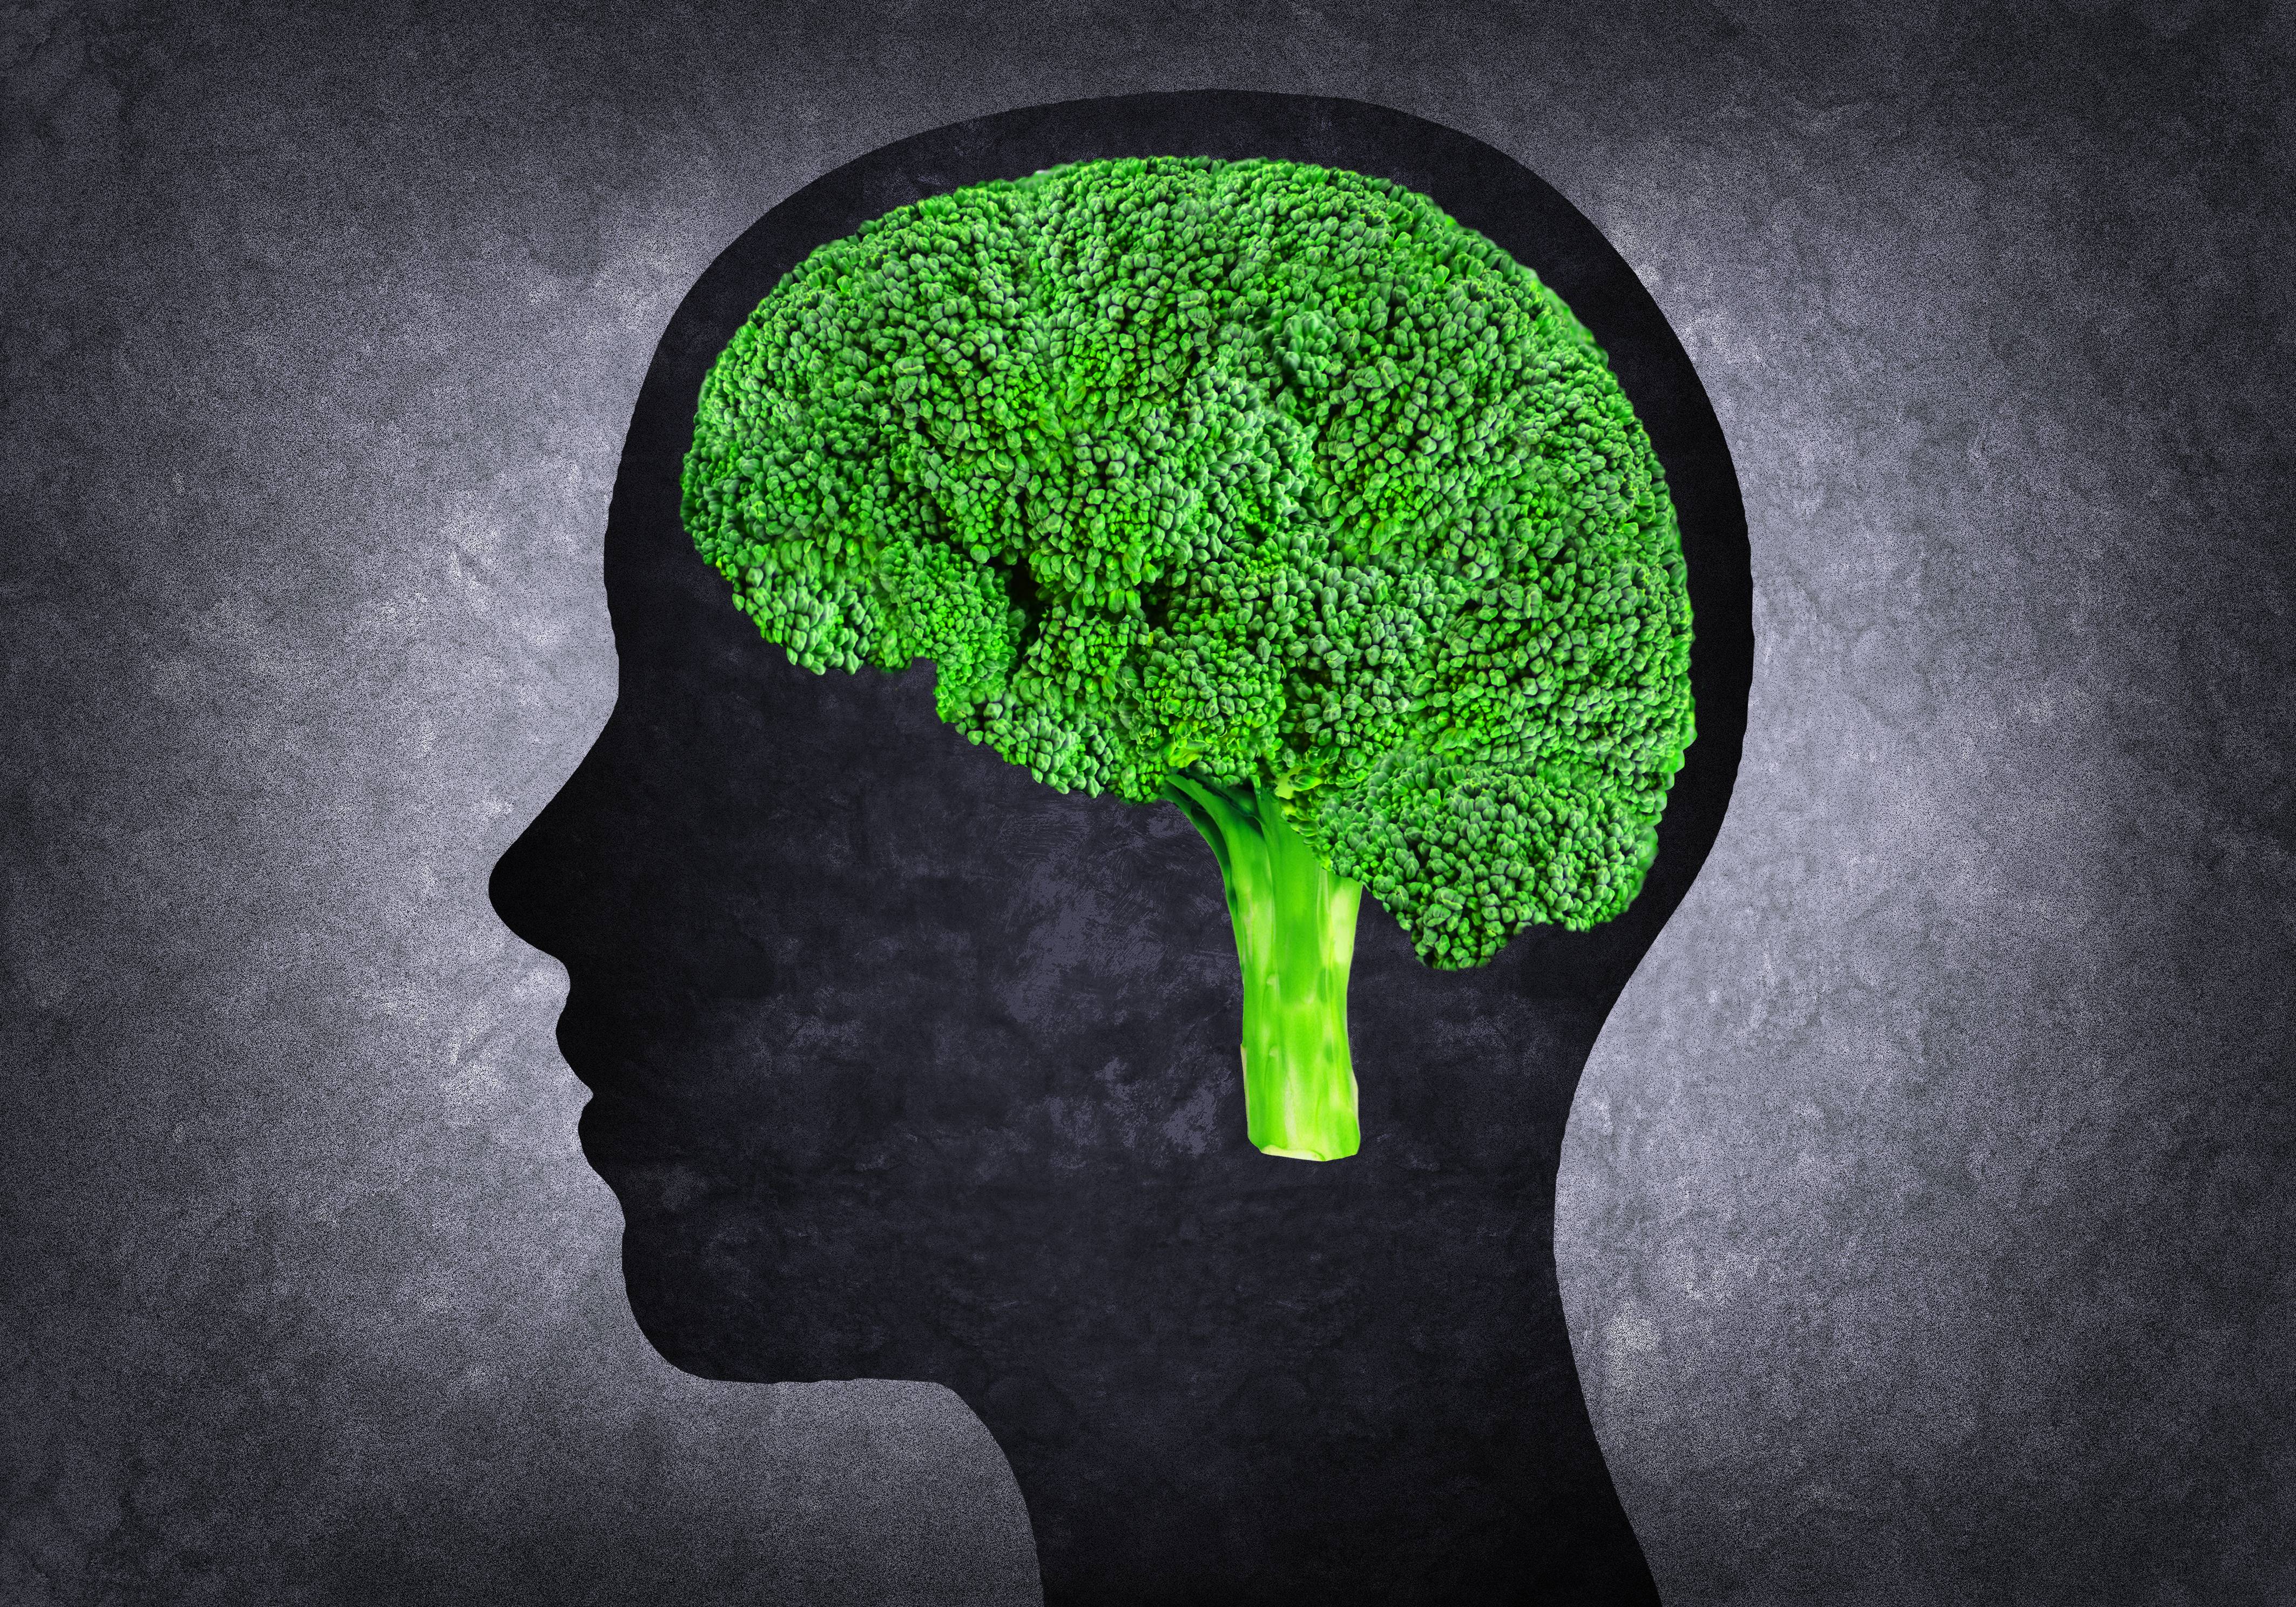 Et brain. Мозг и природа. Пища для мозга. Зеленый мозг.